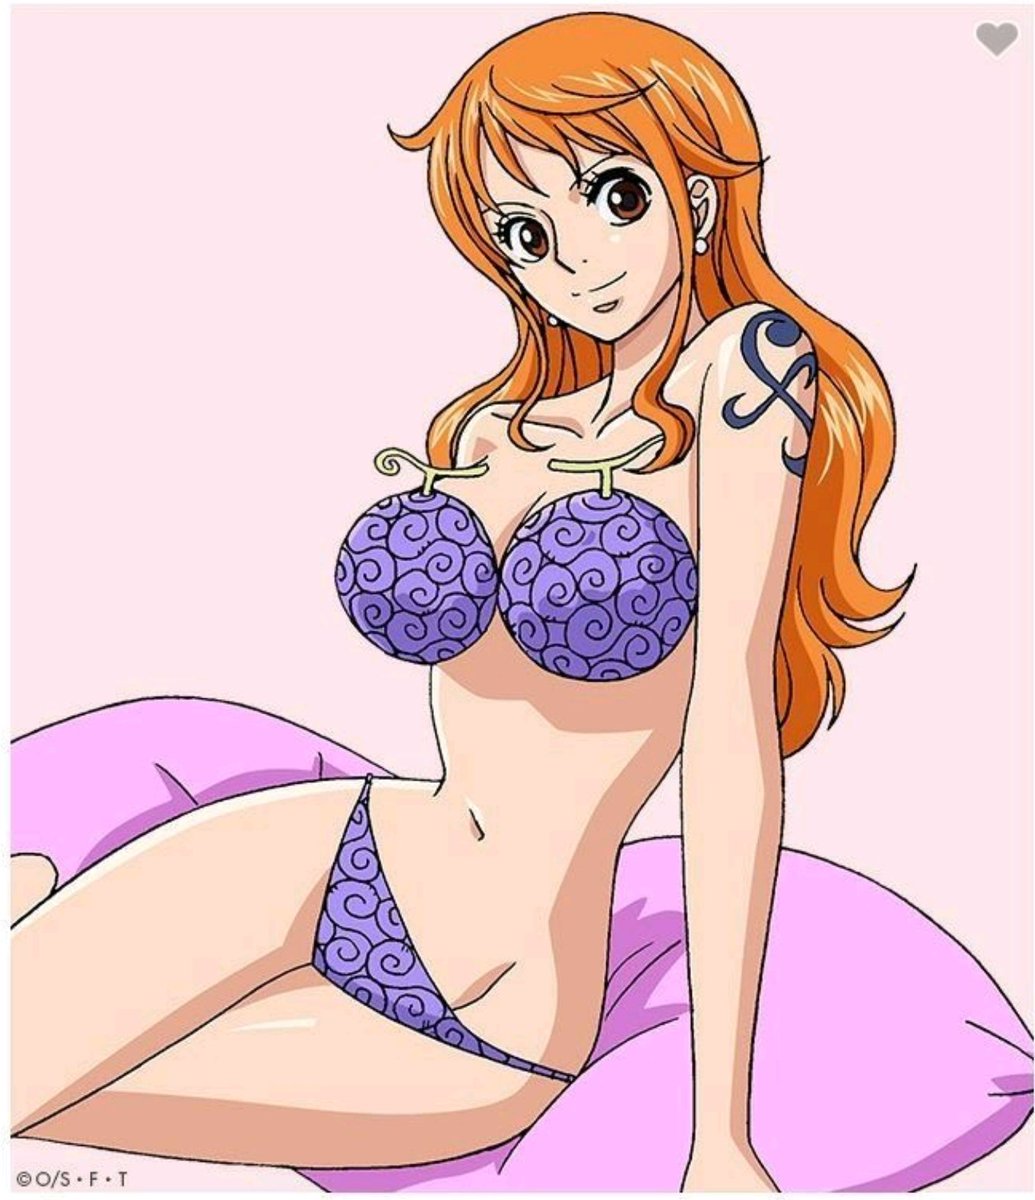 Nami wearing Luffy's devil fruit as lingerie. 